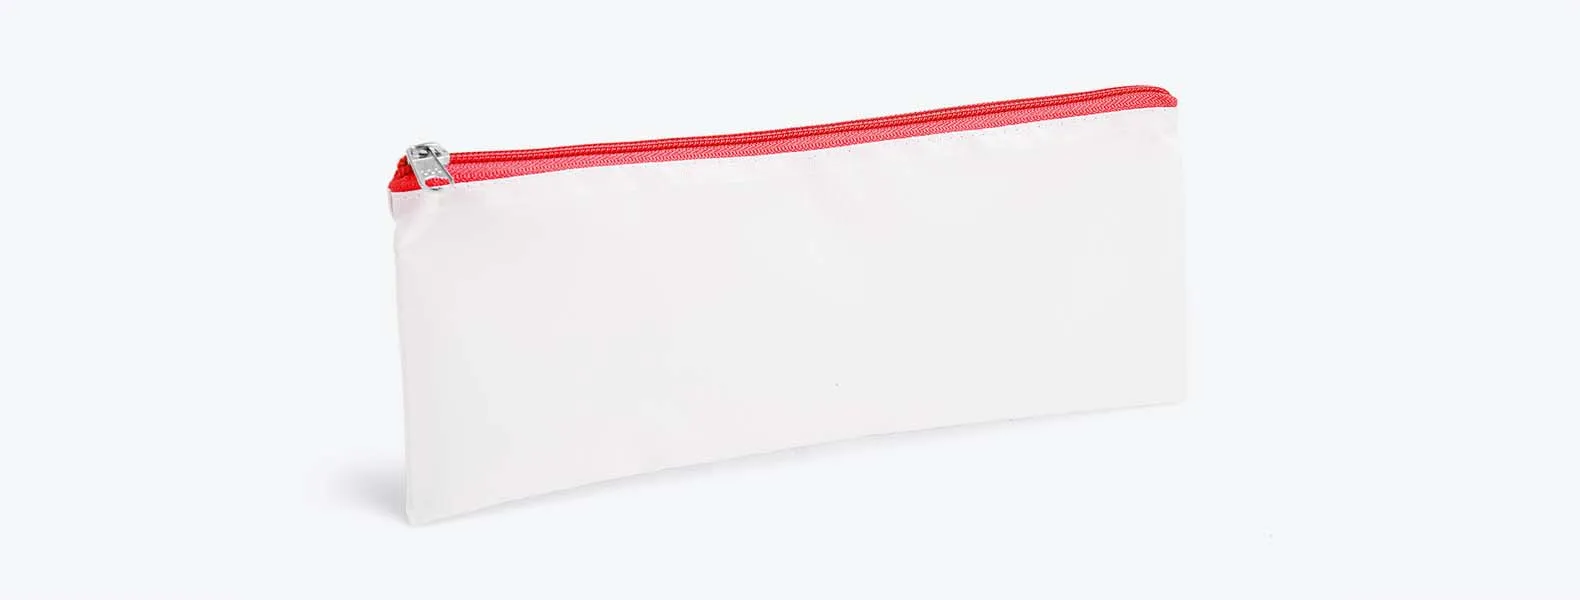 Necessaire com zíper vermelho confeccionada em Nylon 210 resinado. Conta com fechamento em zíper nas cores preta, azul, vermelha, verde, amarelo, laranja, roxo e rosa.